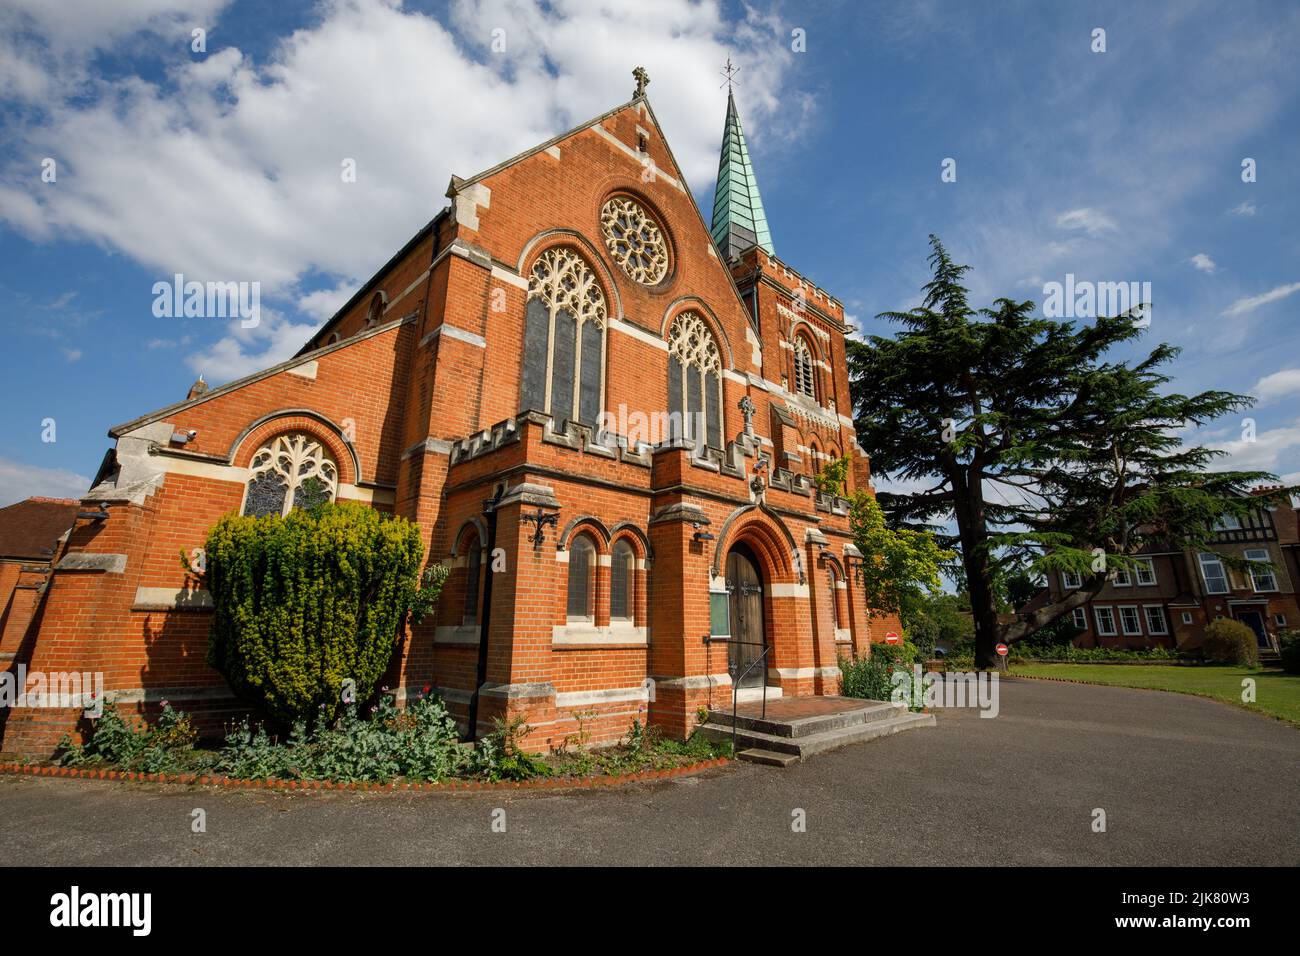 Chiesa di San Pietro, una chiesa vittoriana costruita in mattoni rossi. Staines-upon-Thames, sito di riprese per il film The Omen. Foto Stock